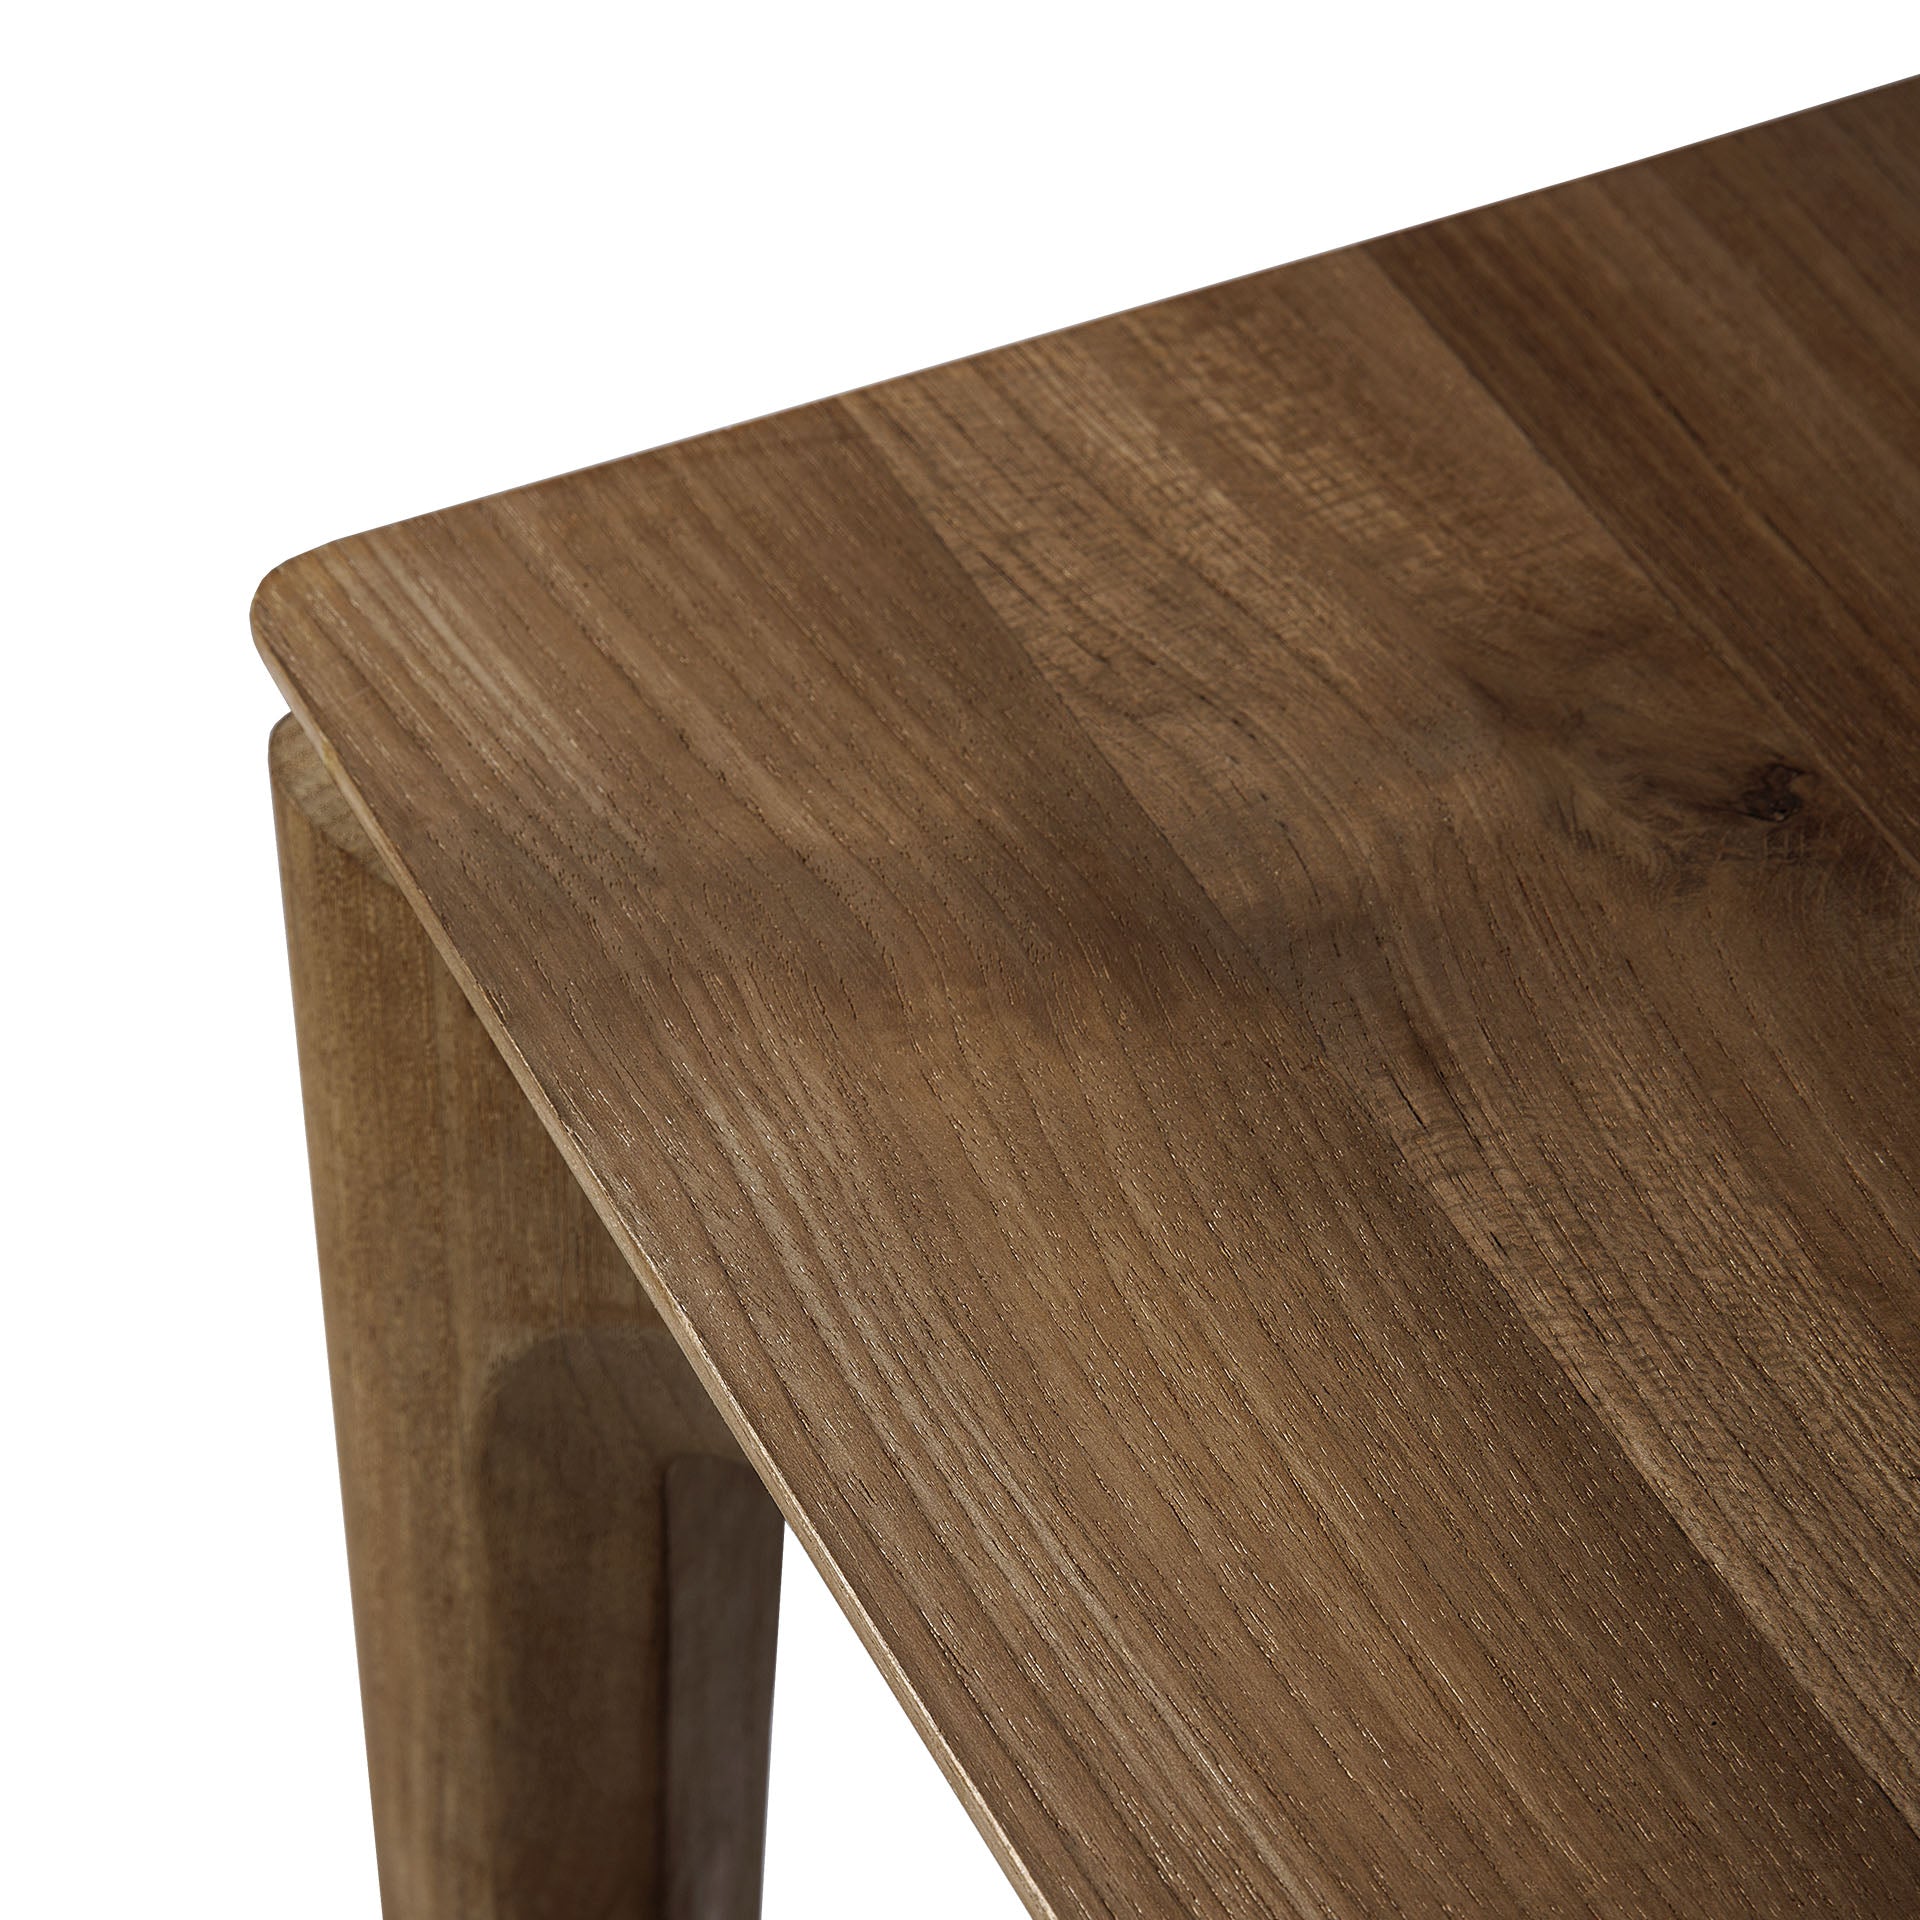 比利時原裝進口實木傢俬 - 伸縮系列 - Bok系列柚木可伸縮餐桌